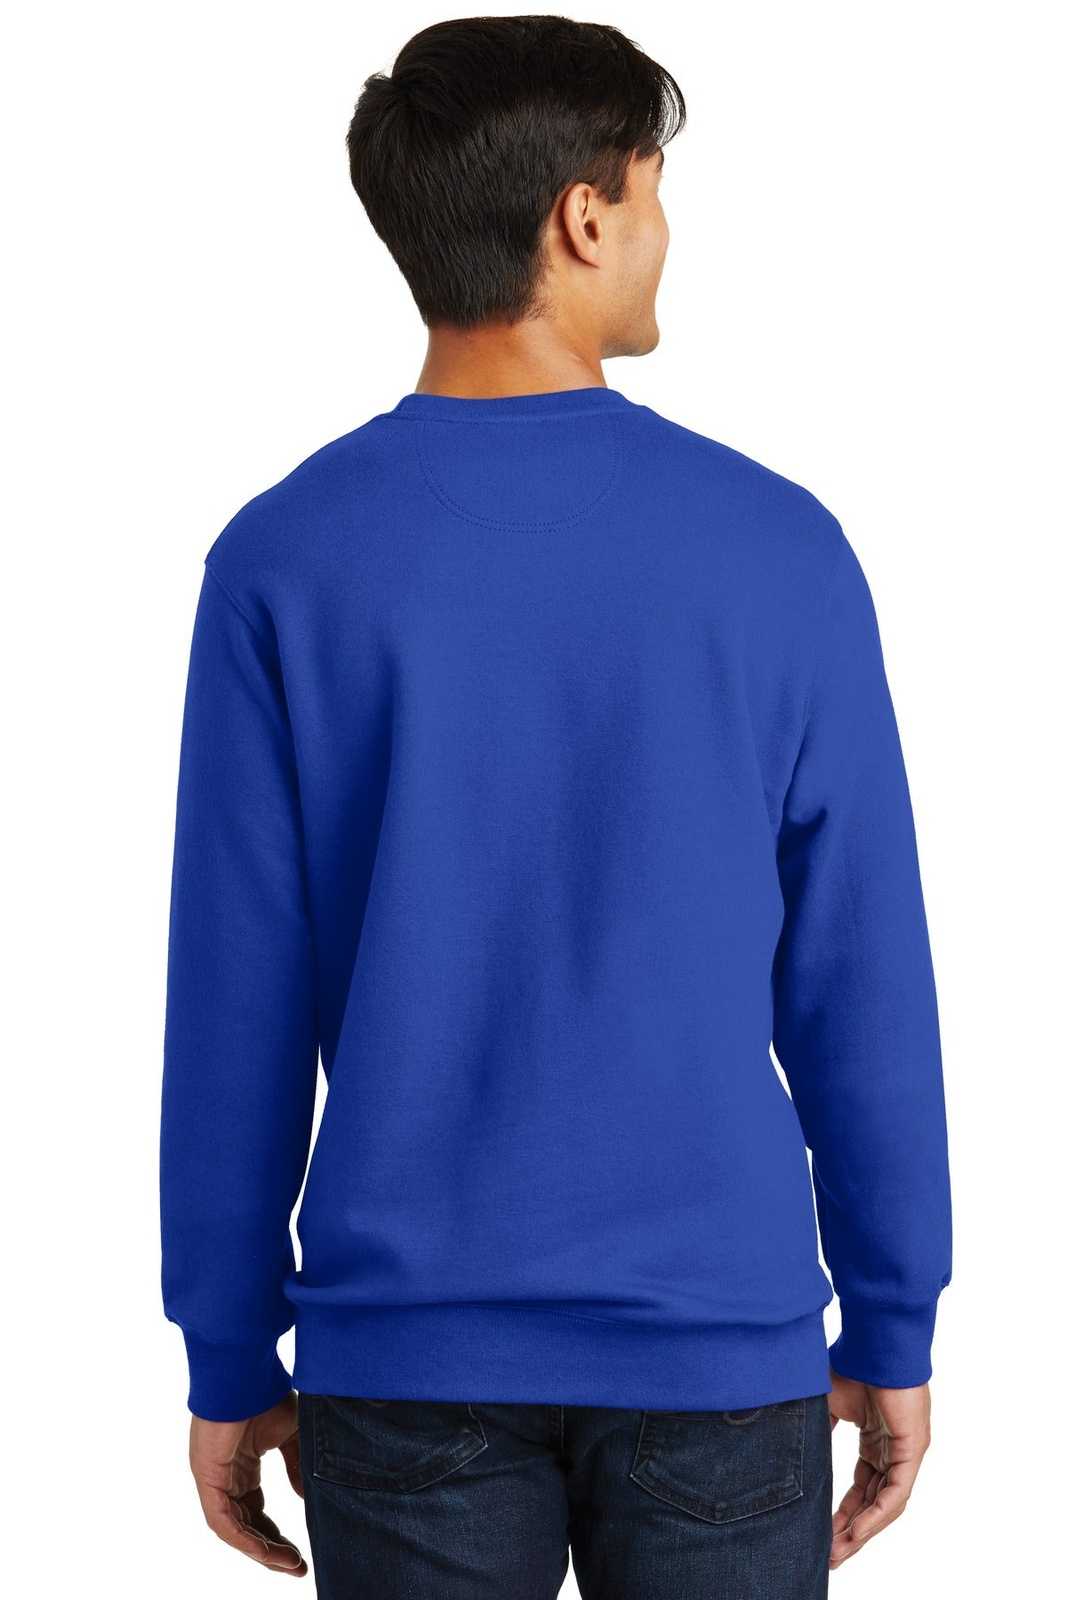 Port & Company PC850 Fan Favorite Fleece Crewneck Sweatshirt - True Royal - HIT a Double - 1